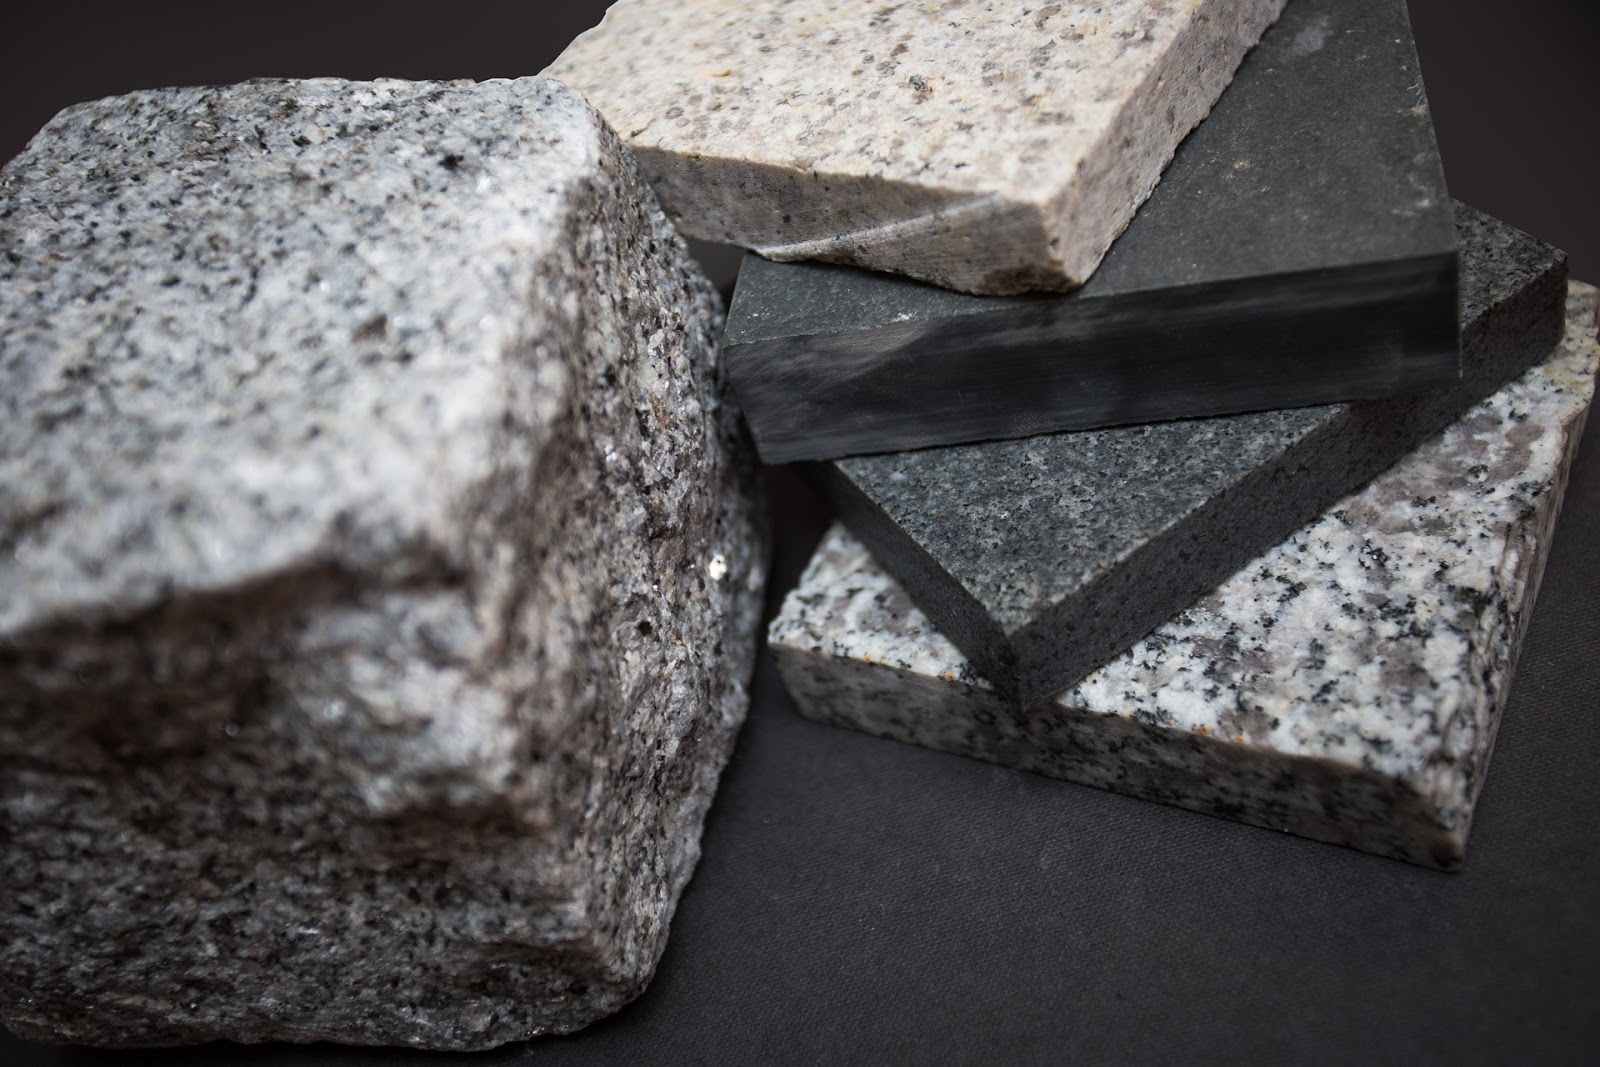 Perbedaan Kekurangan Kelebihan Dari Granit Dan Marmer Pusat Marmer Dan Granit Pusat Marmer Pusat Granit Pemasangan Granit Cara Membersihkan Marmer